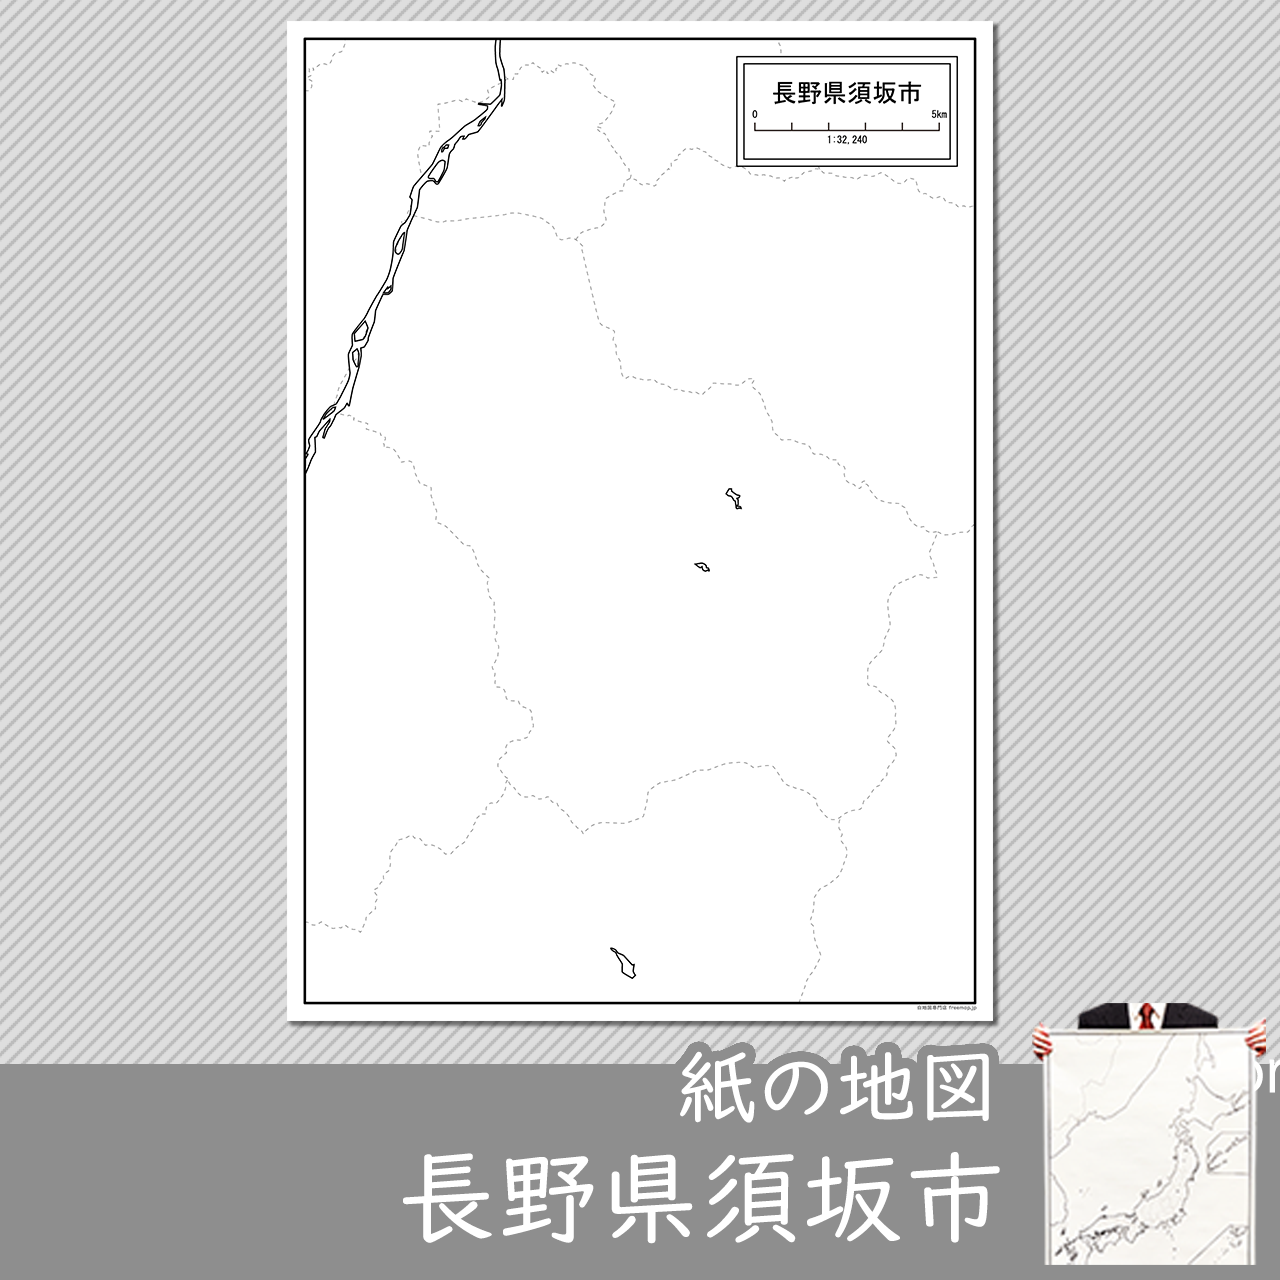 須坂市の紙の白地図のサムネイル